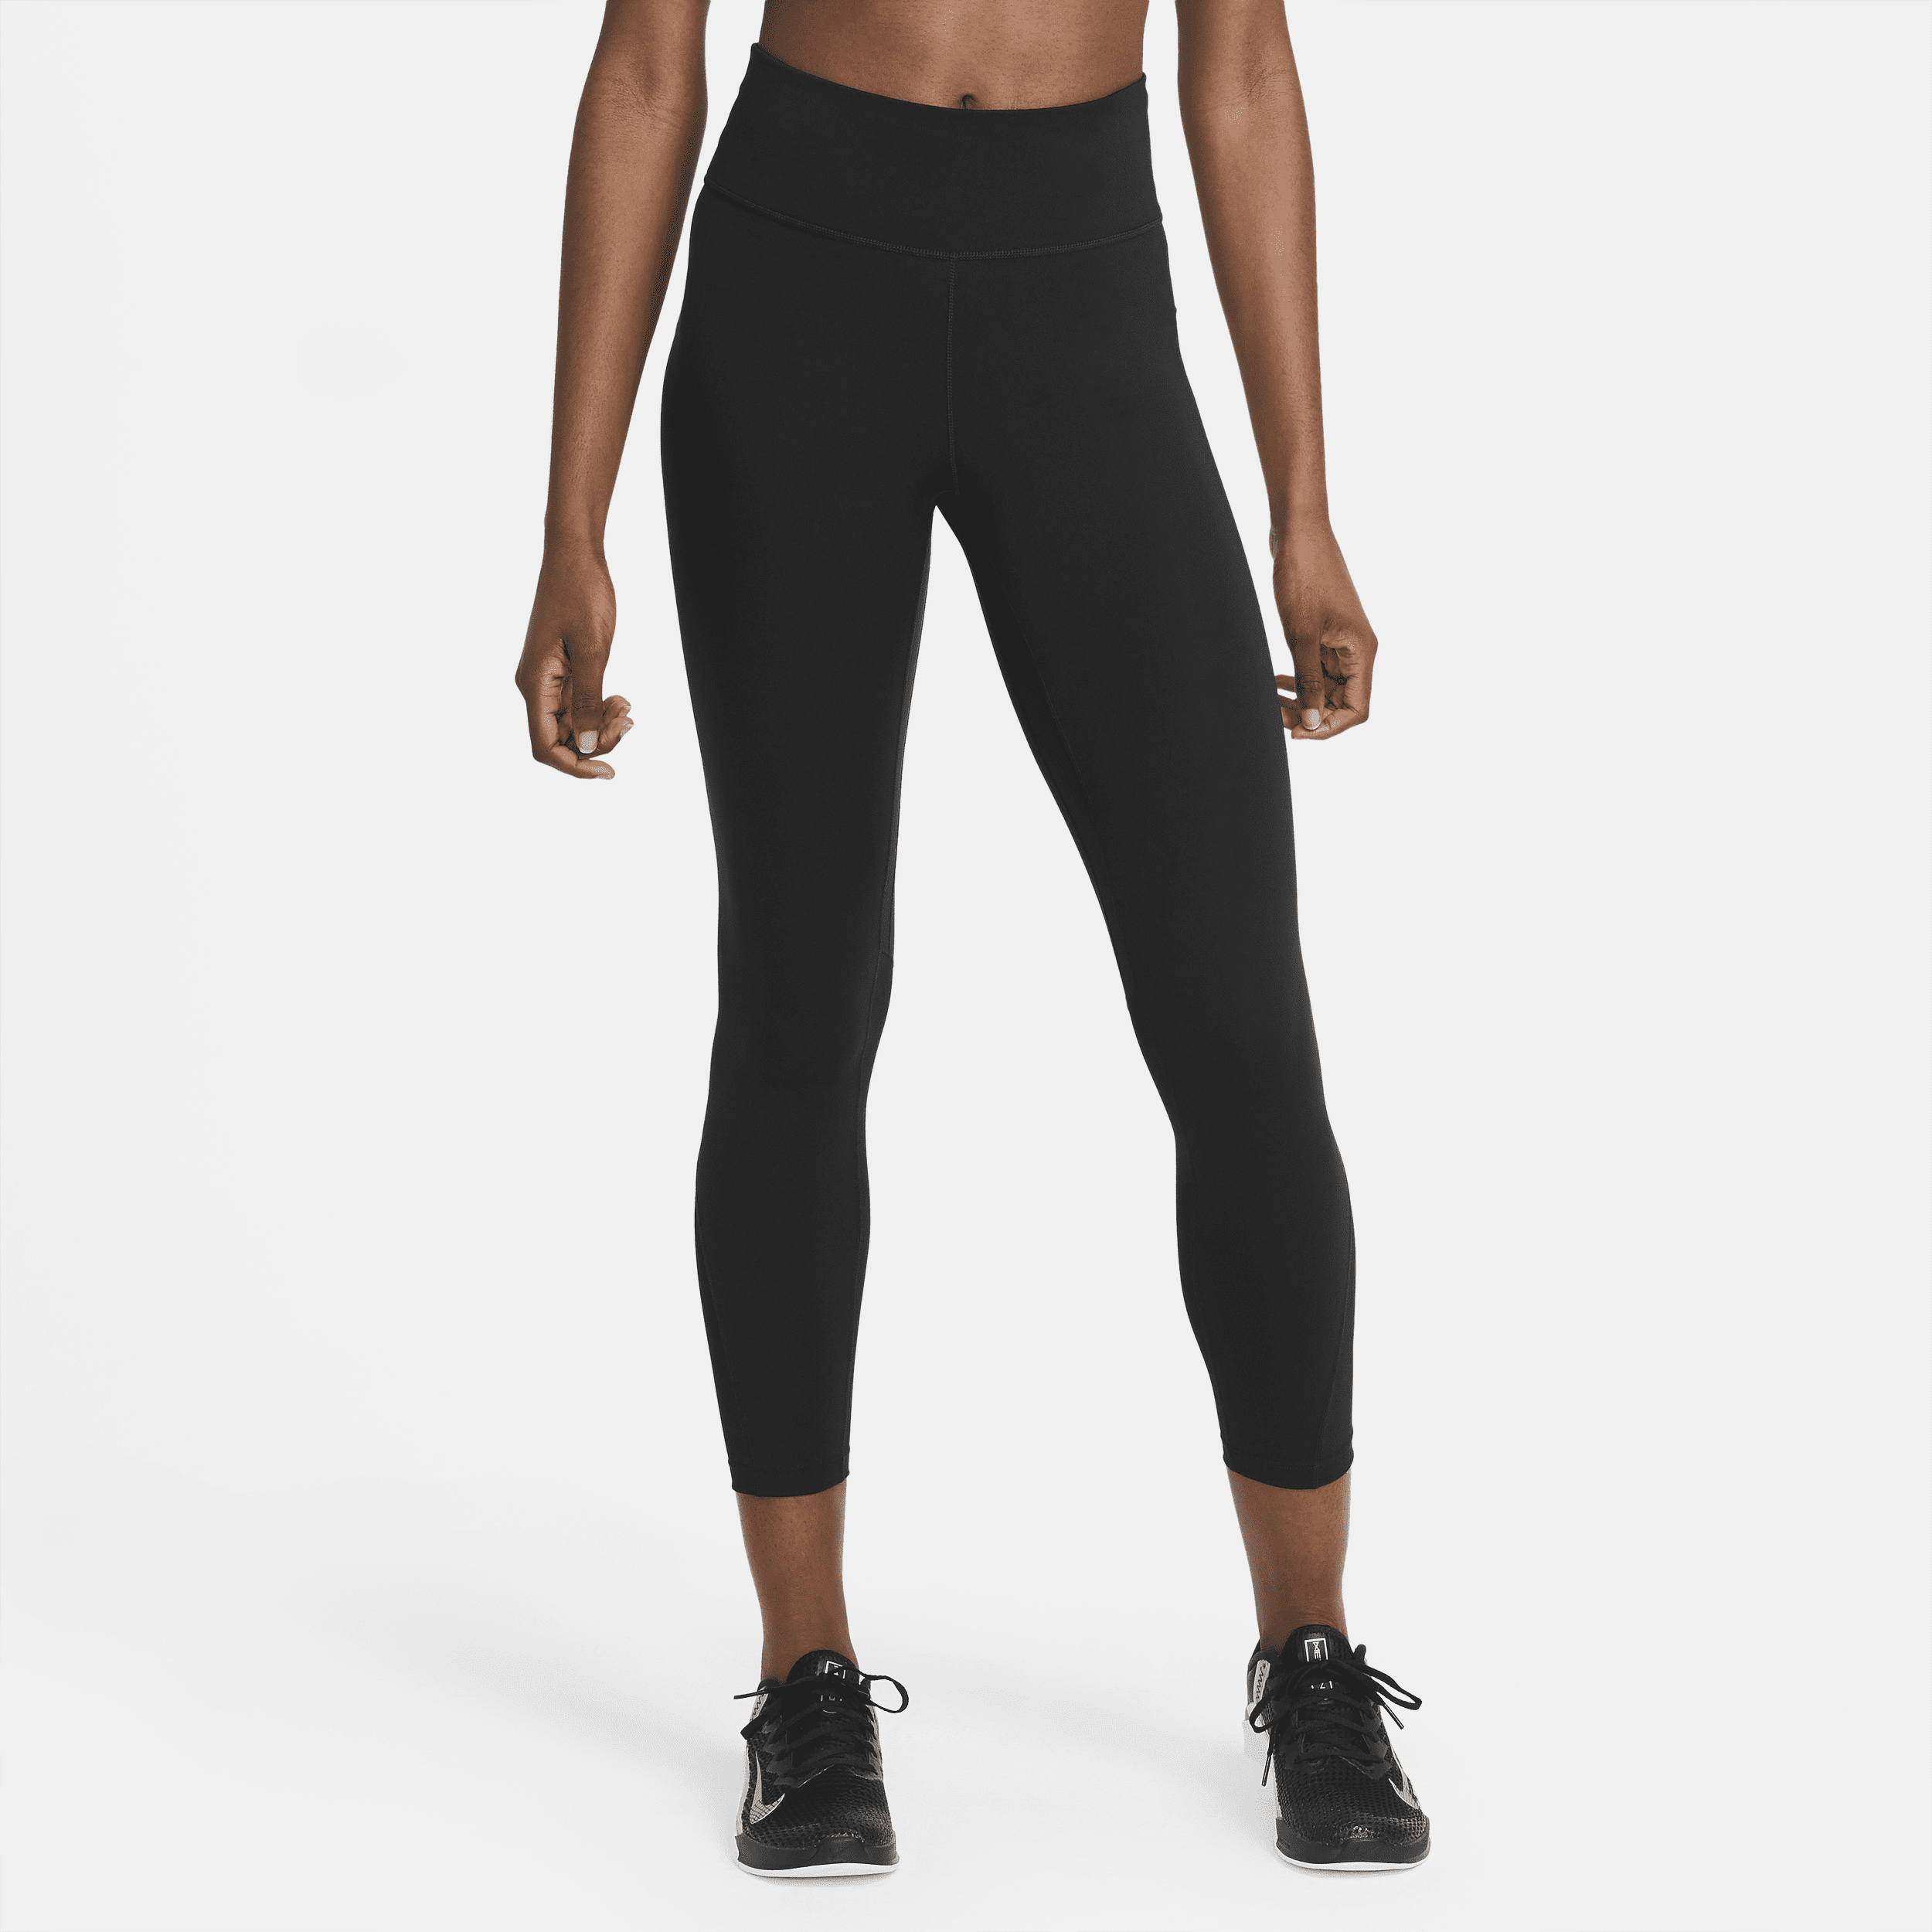 Leggings a 7/8 a vita media con inserti in mesh Nike Pro – Donna - Nero